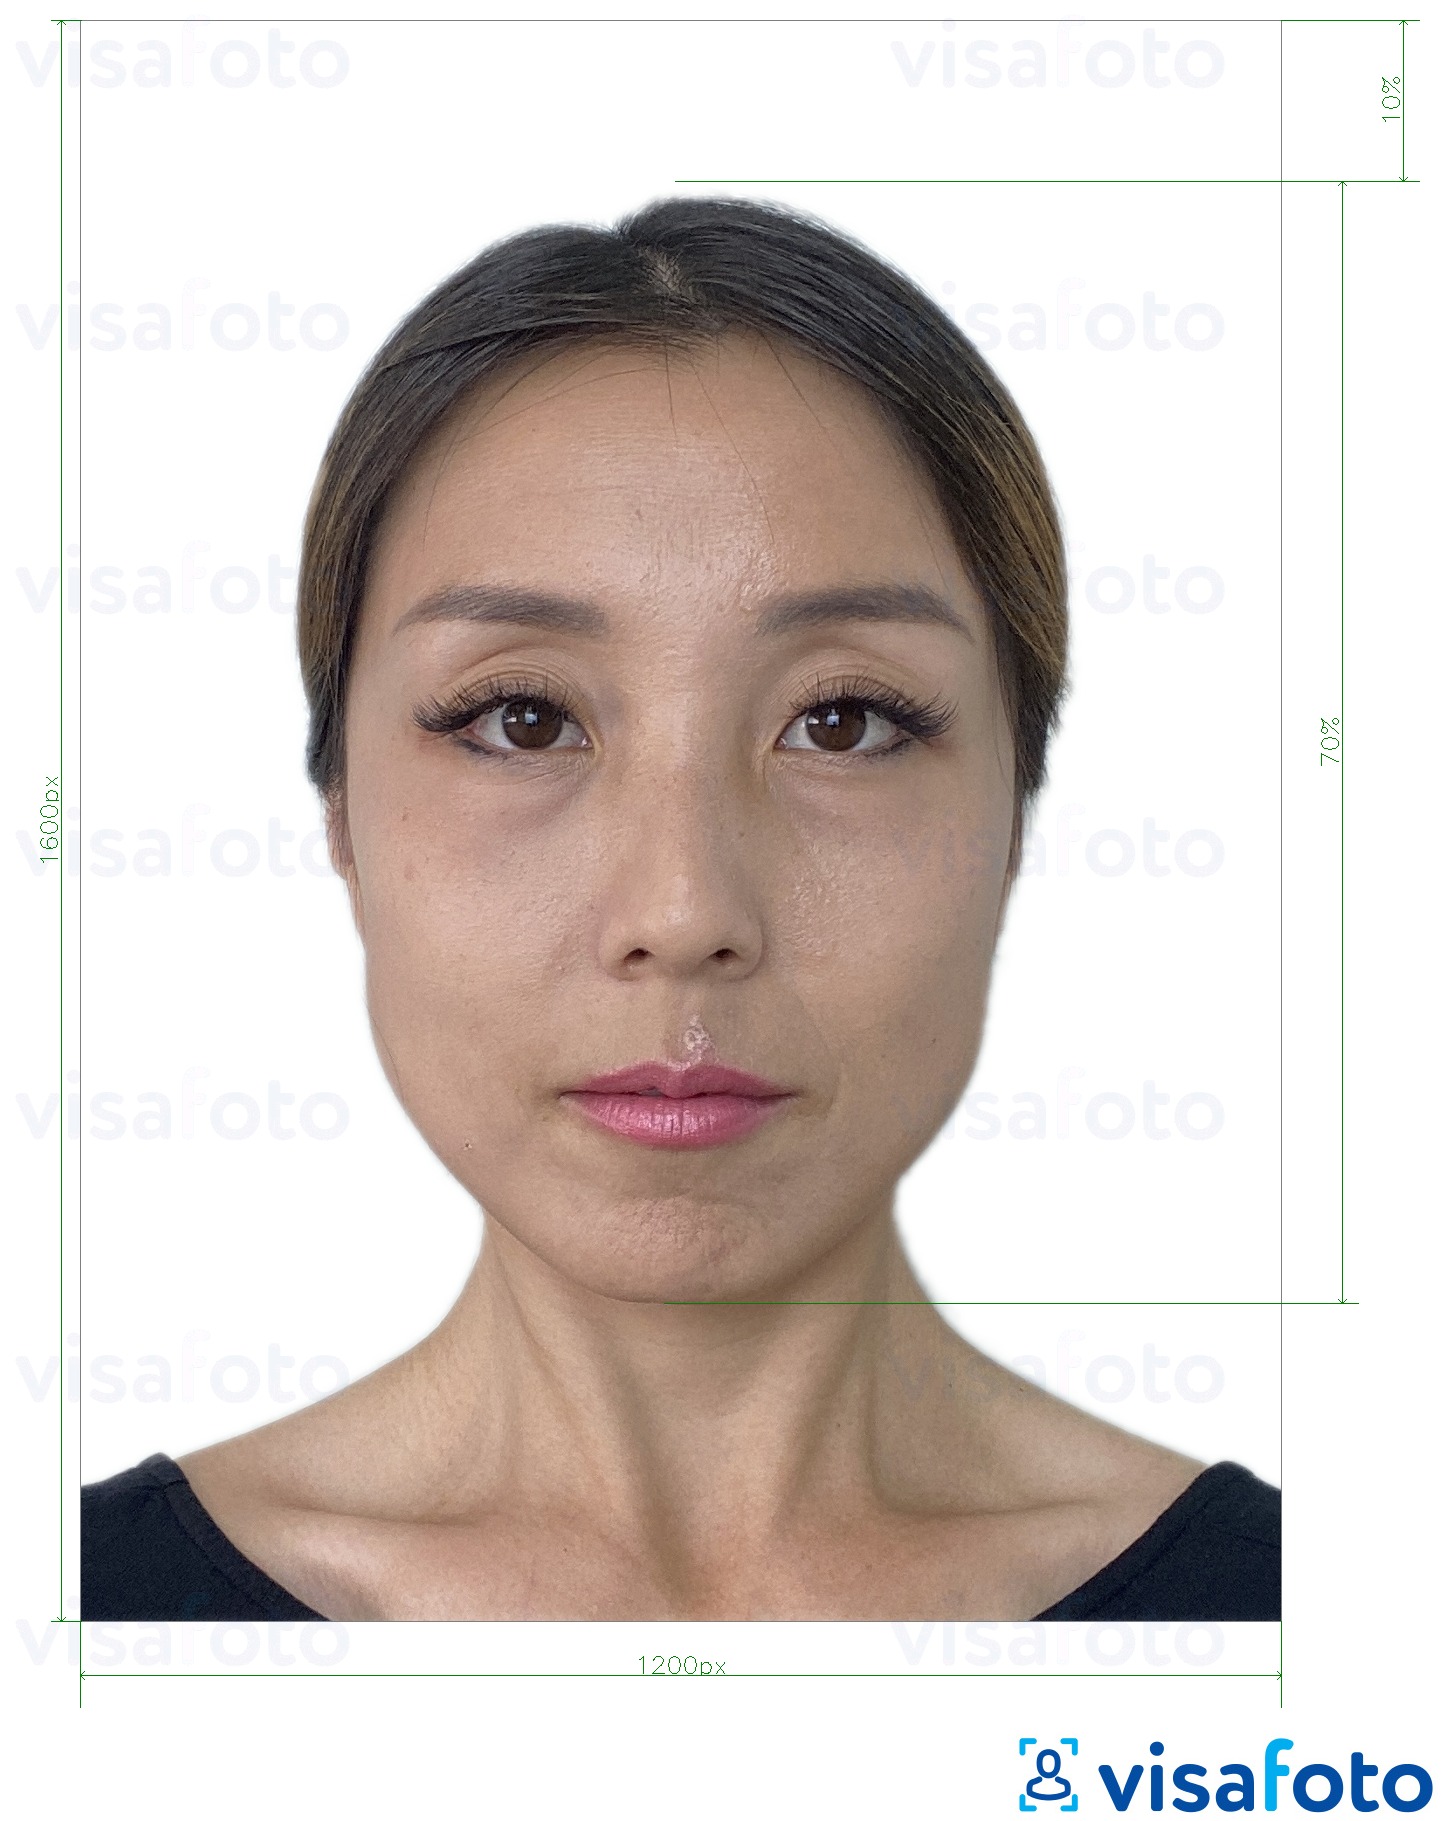 Hong Kong passport online photo